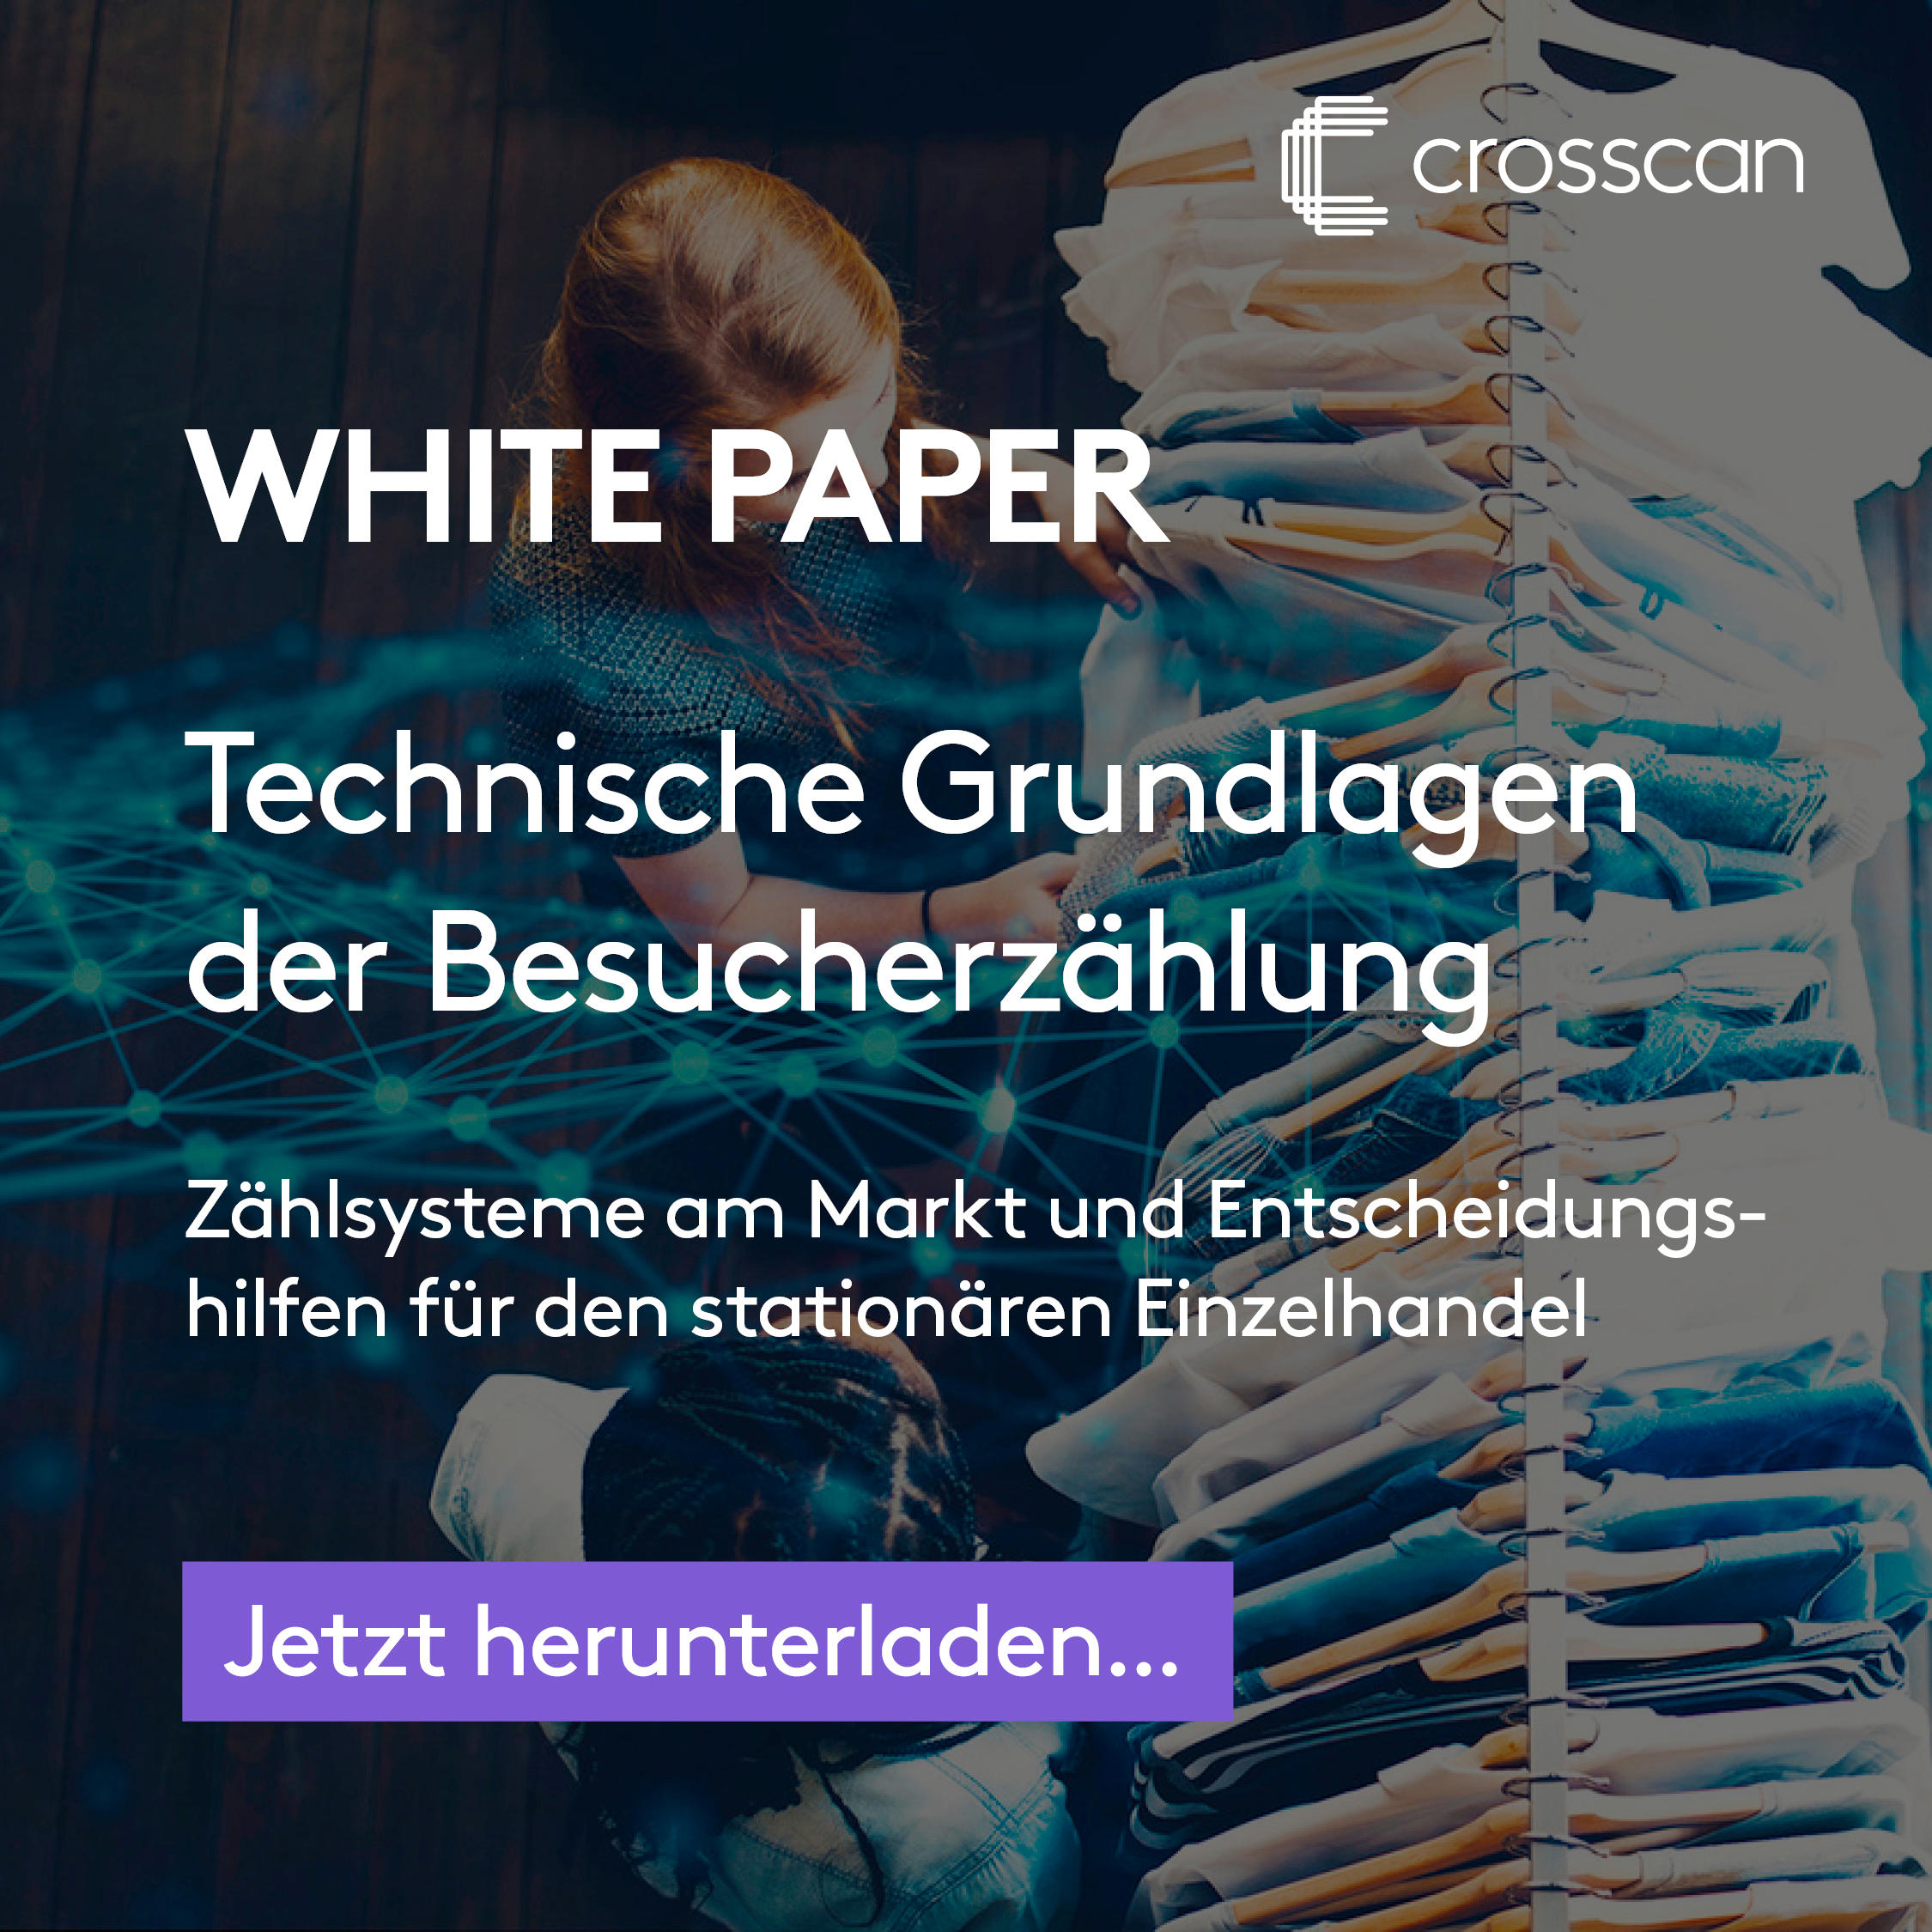 White Paper - Technische Grundlagen der Besucherzählung. Zählsysteme am Markt und Entscheidungshilfen für den stationären Einzelhandel